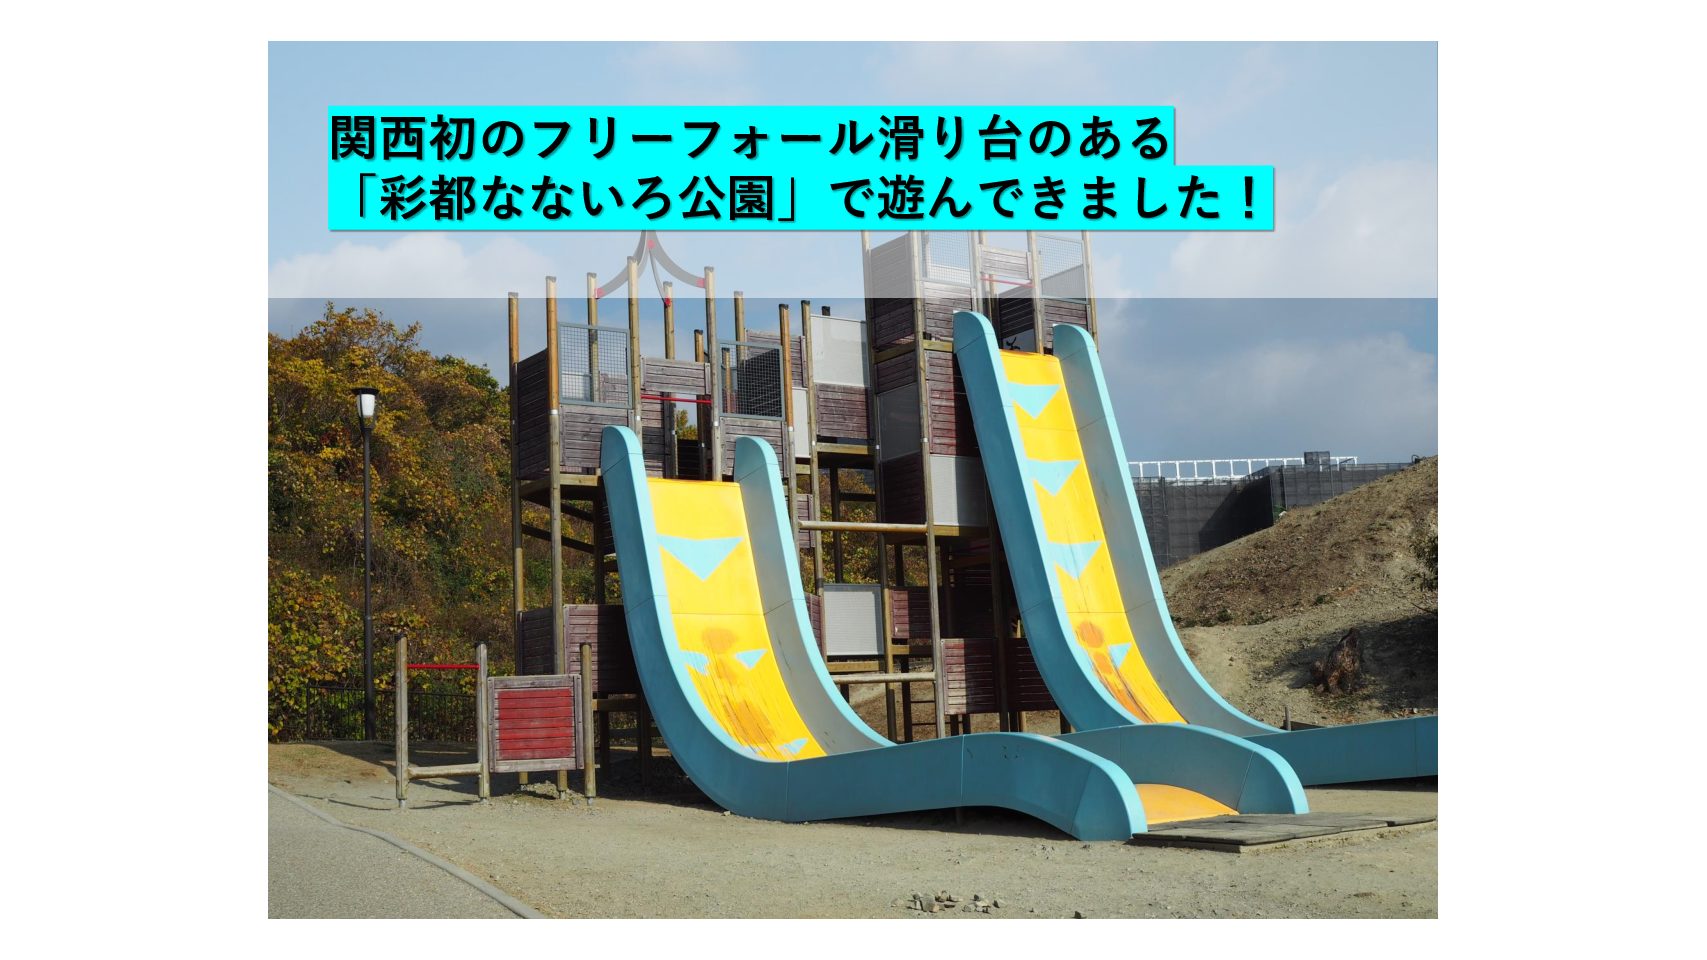 大阪 箕面 関西初のフリーフォール滑り台のある 彩都なないろ公園 で遊んできました おでかけ大好き ちゃんママブログ